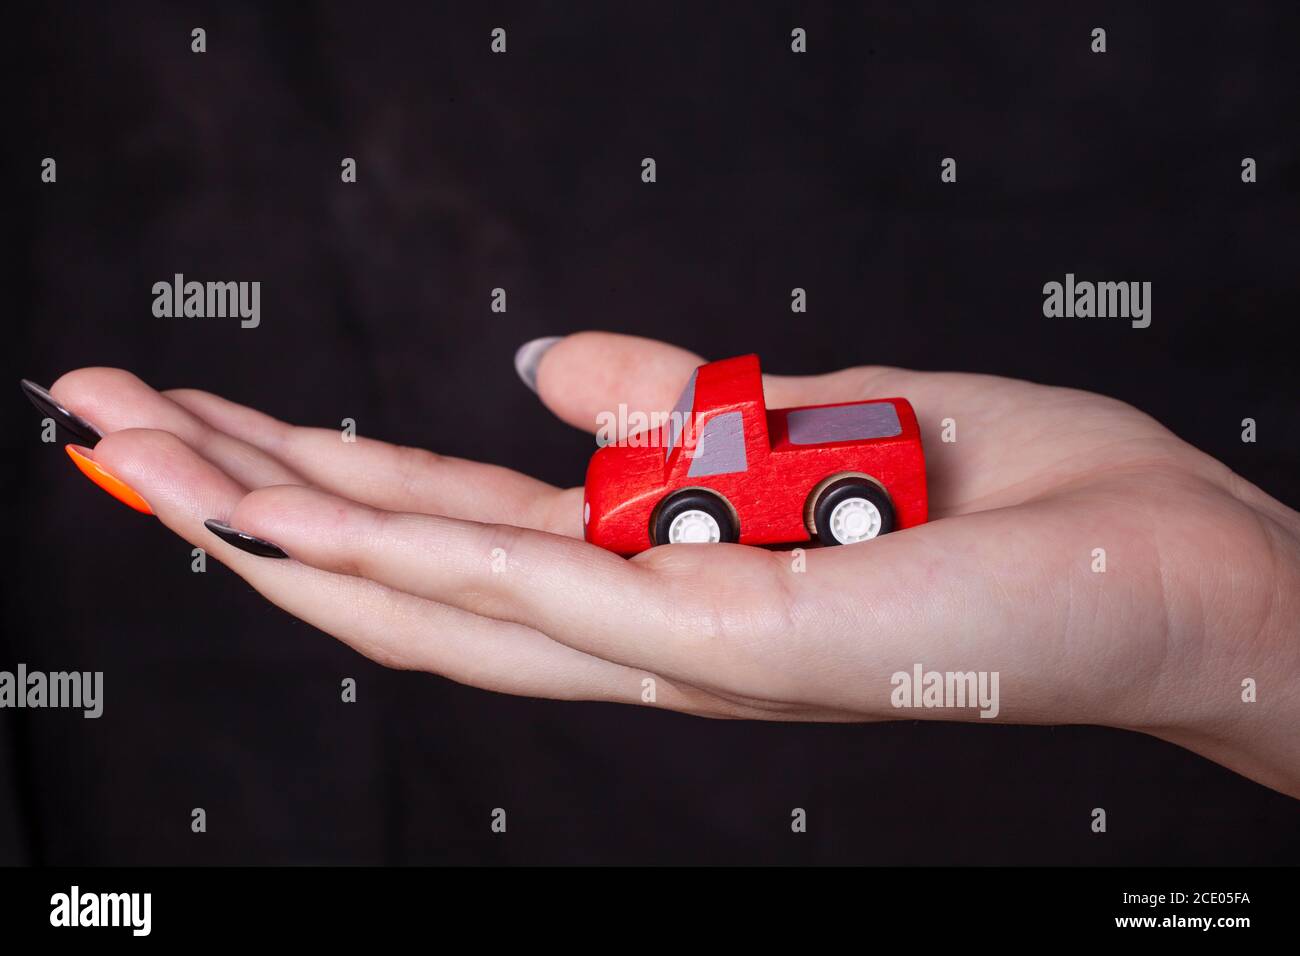 Main de la femme tenant la voiture miniature contre un fond noir Banque D'Images